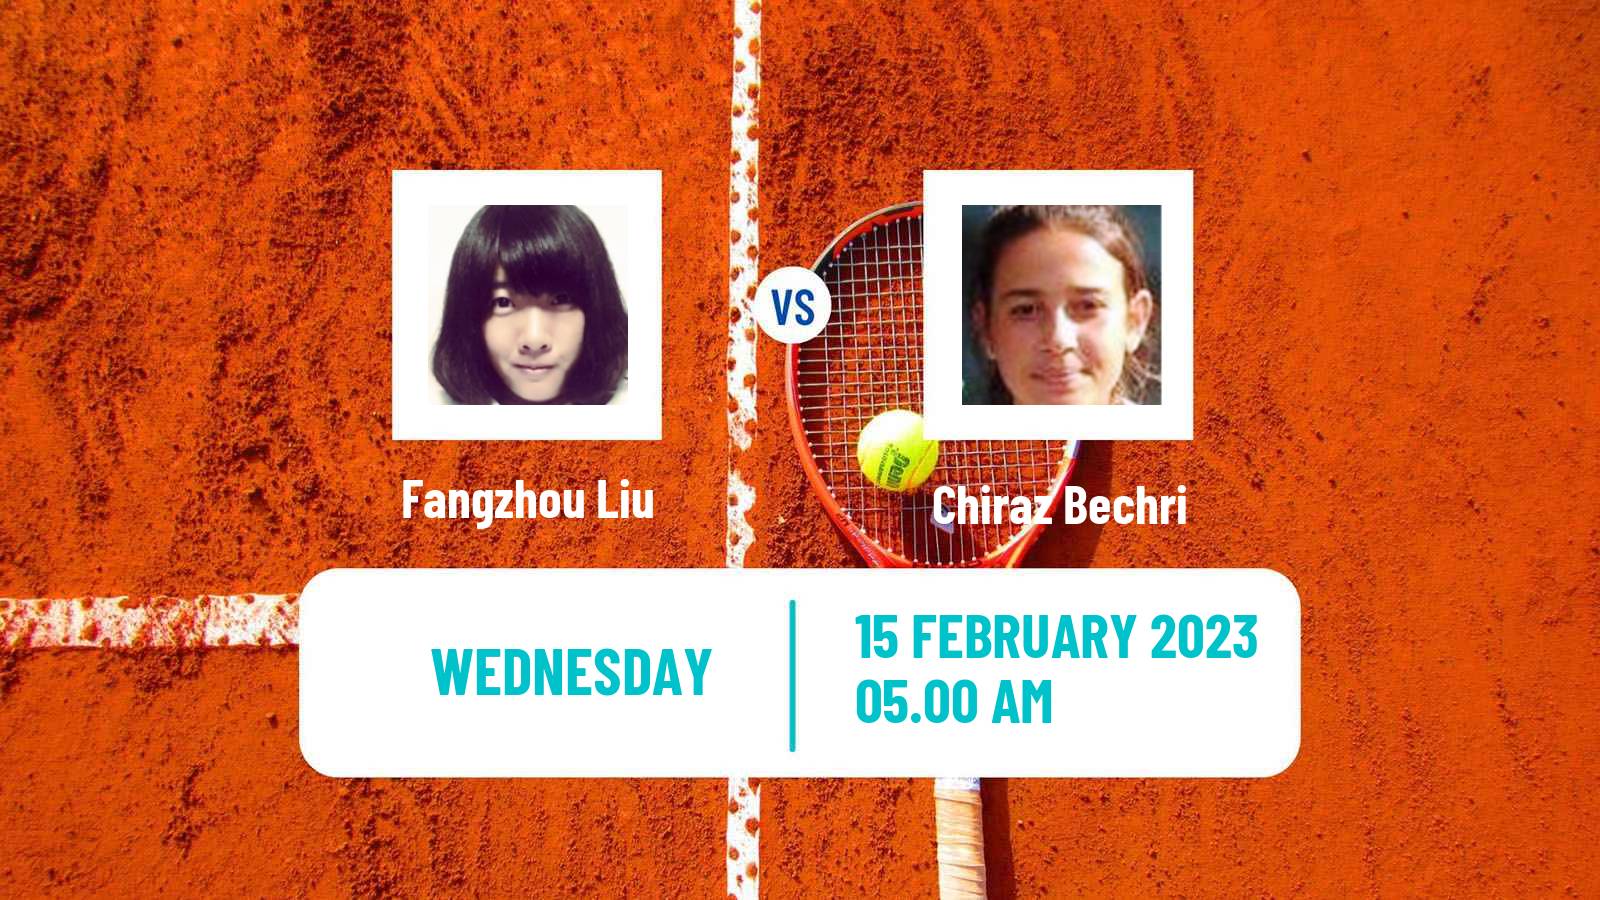 Tennis ITF Tournaments Fangzhou Liu - Chiraz Bechri